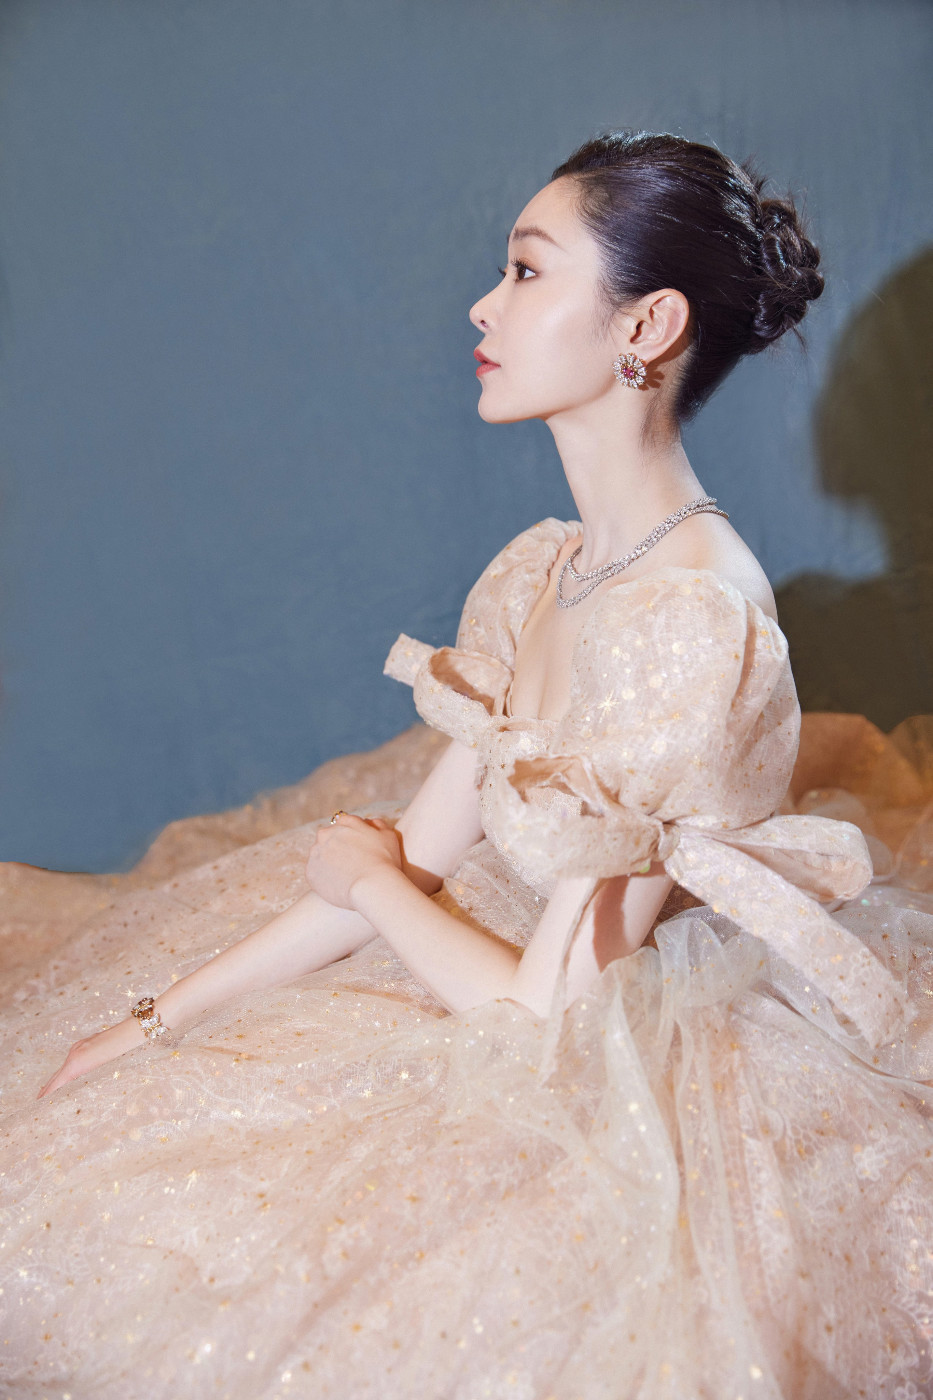 1月5日,演员宋轶出席某盛典活动,一袭星河缀光粉色蓬蓬裙宛如冬日童话